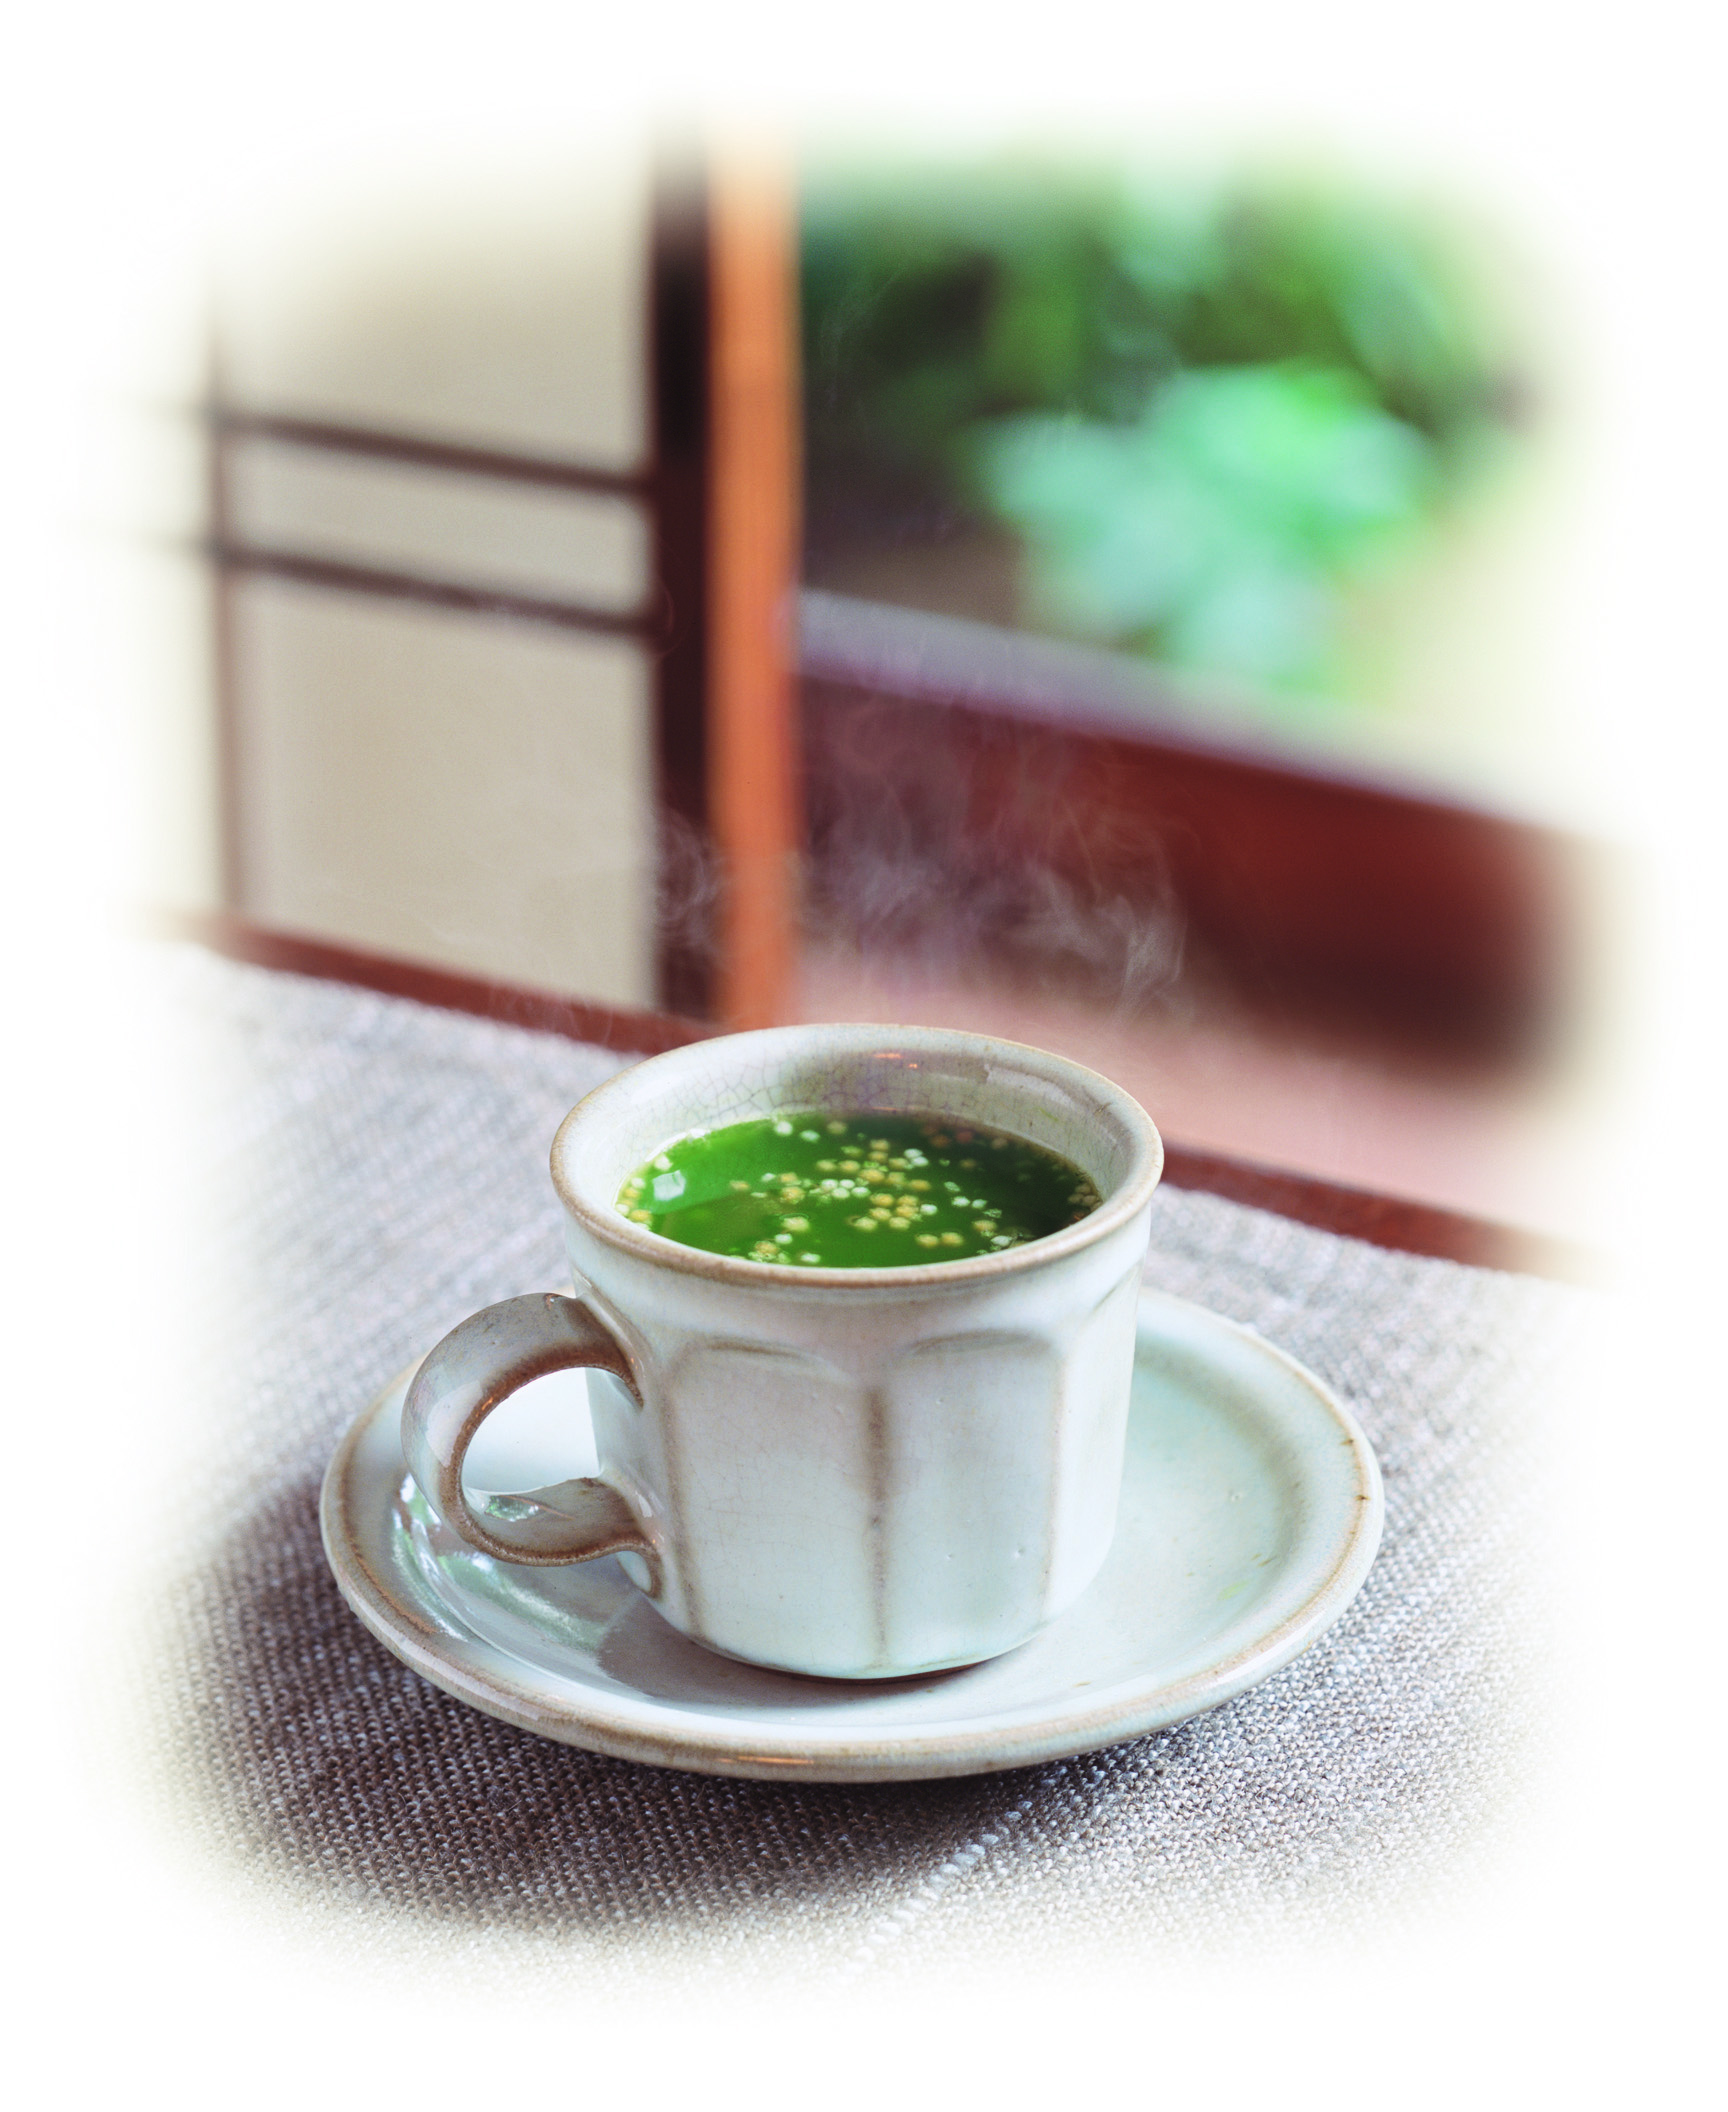 うす茶あられは、昭和９年発売の抹茶と砂糖をブレンドしたロングセラー商品。
姉妹品にウス茶糖があります。